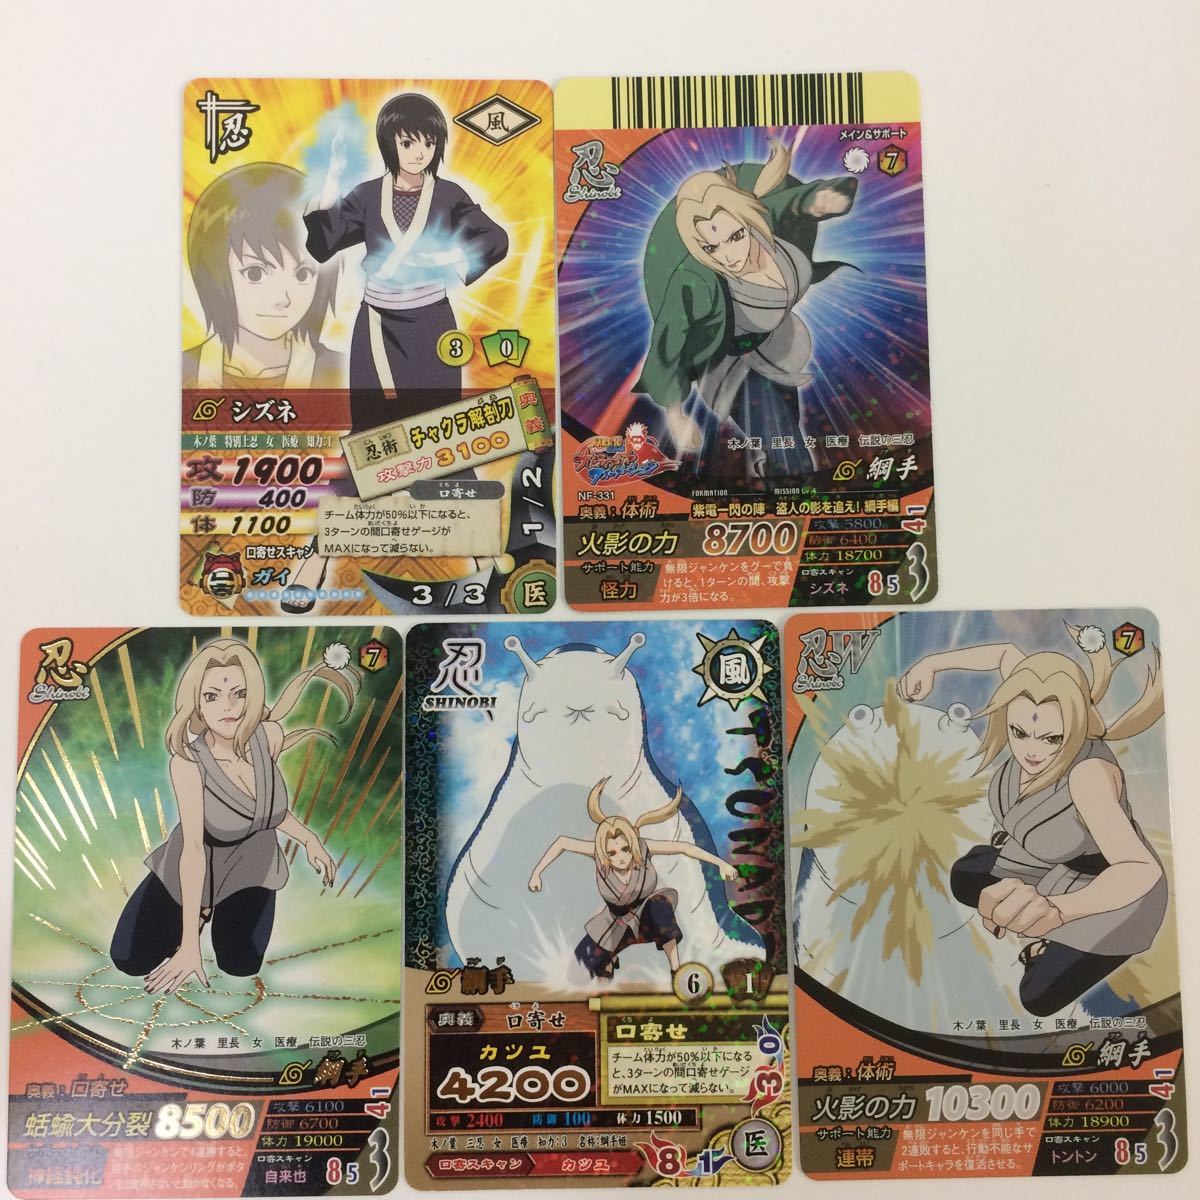 ね 3 Naruto ナルティメットカードバトル まとめ 綱手姫 レア シズネ 2 Dejapan Bid And Buy Japan With 0 Commission